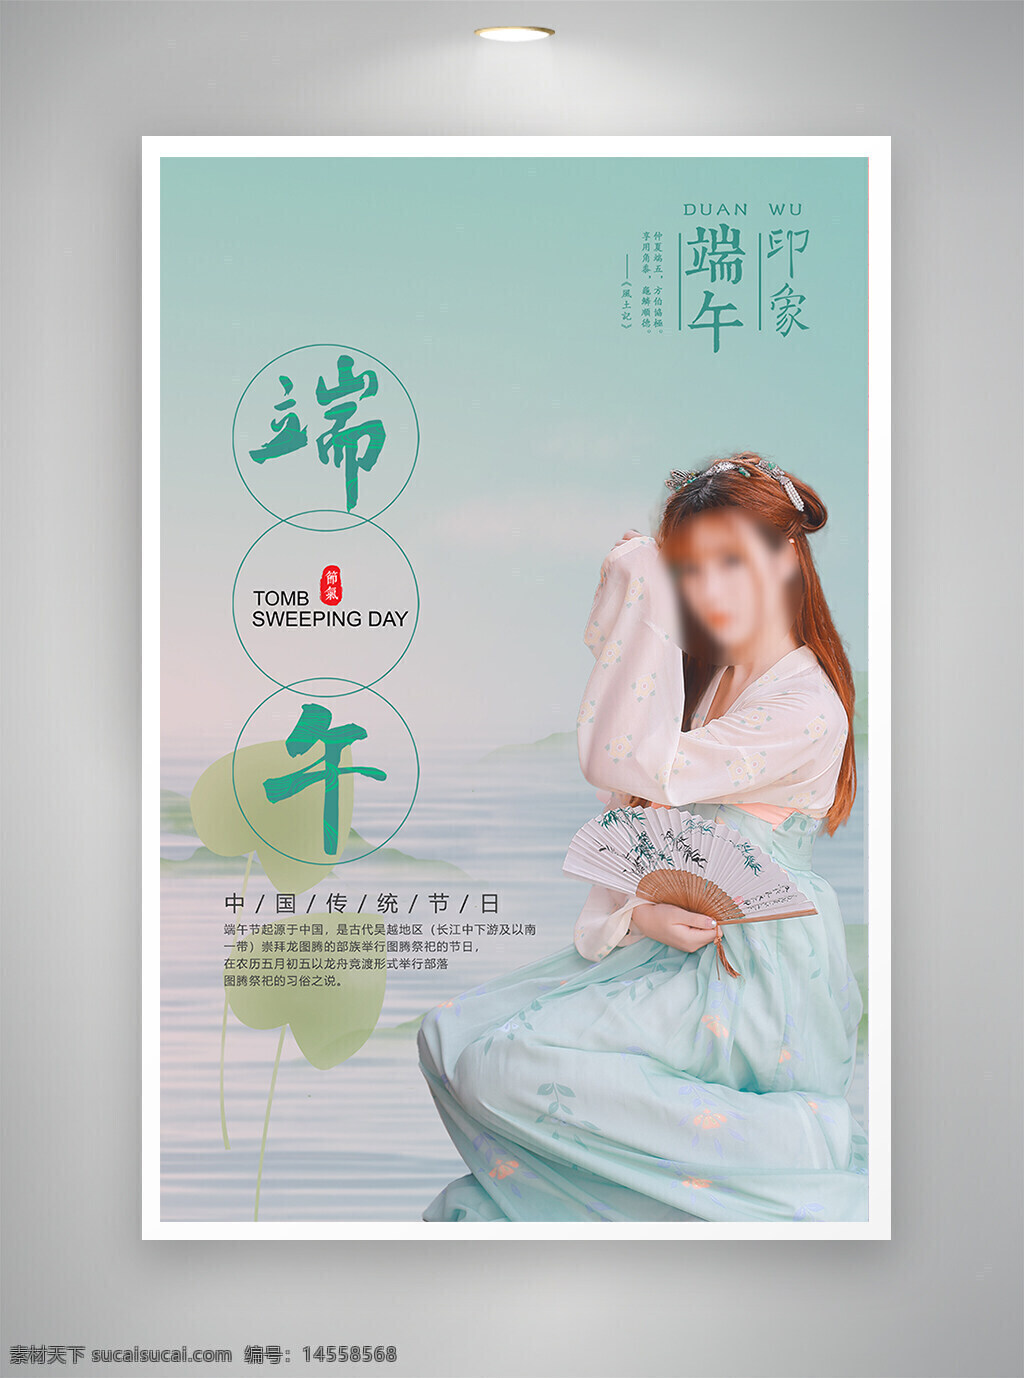 中国风海报 促销海报 节日海报 古风海报 端午海报